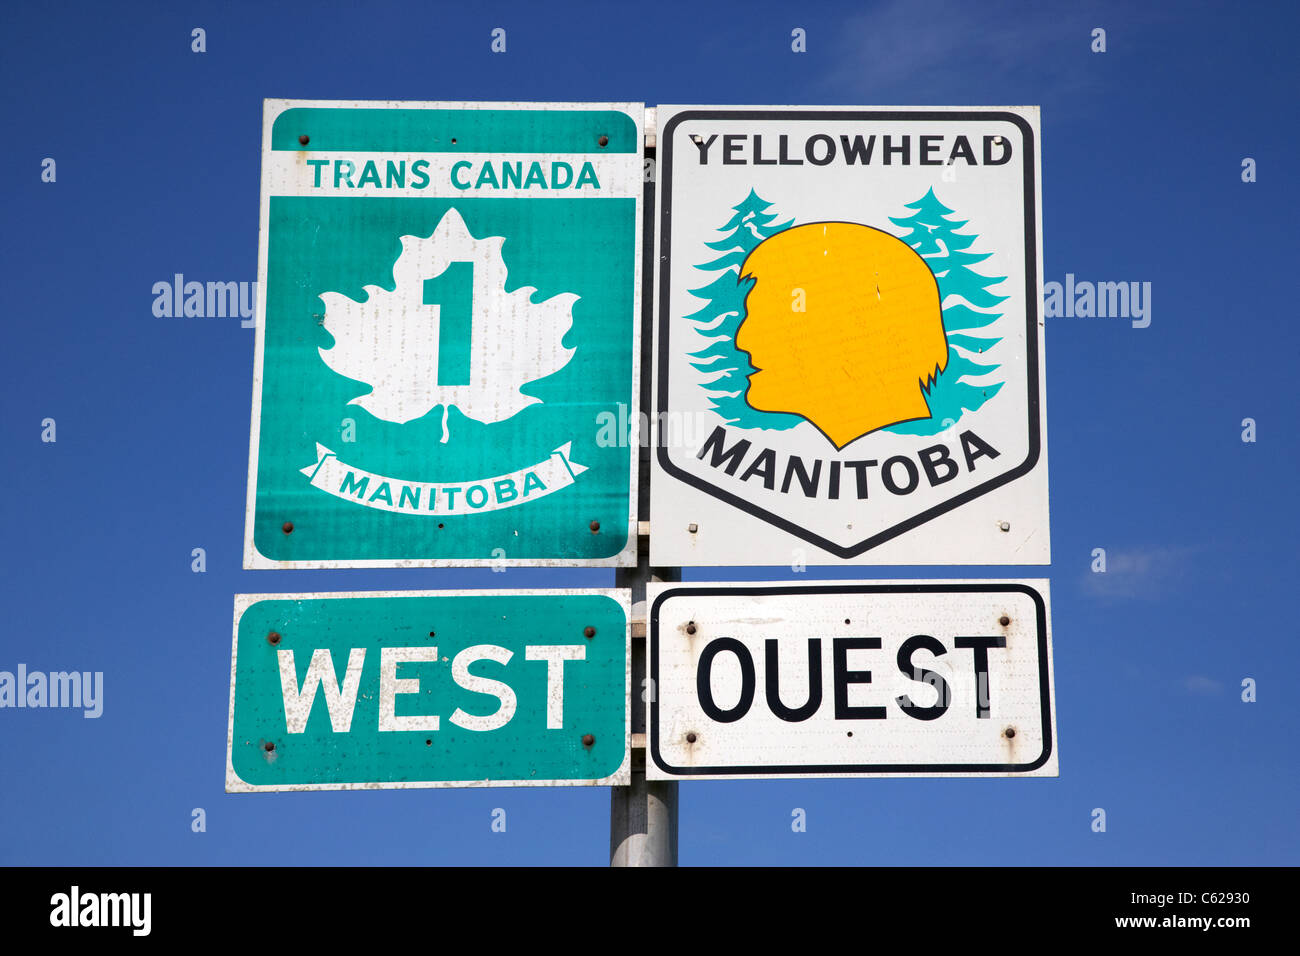 Wegweiser für Trans-Canada-Highway 1 und Yellowhead Route in Manitoba Kanada Stockfoto